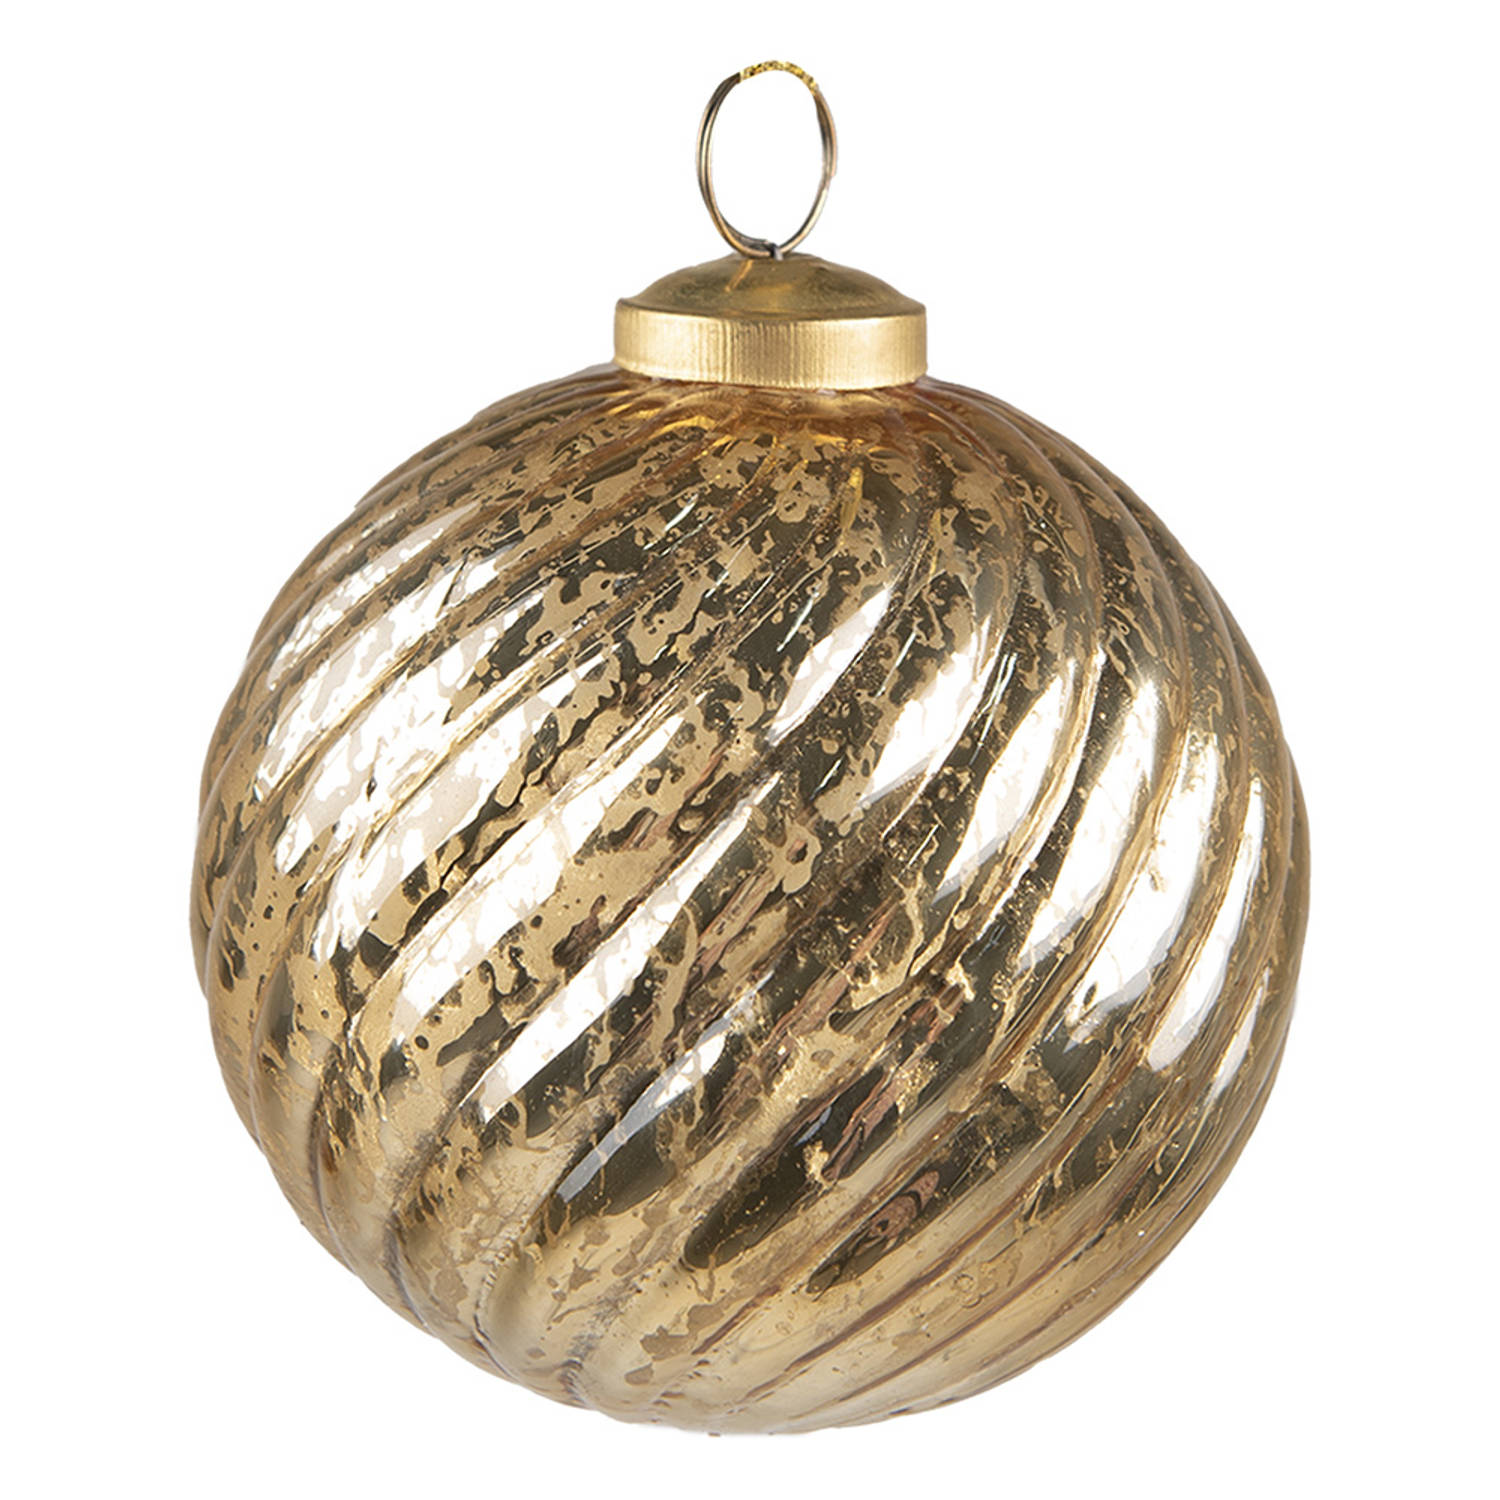 HAES DECO - Kerstbal - Formaat Ø 9x10 cm - Kleur Goudkleurig - Materiaal Glas - Kerstversiering, Kerstdecoratie, Decoratie Hanger, Kerstboomversiering